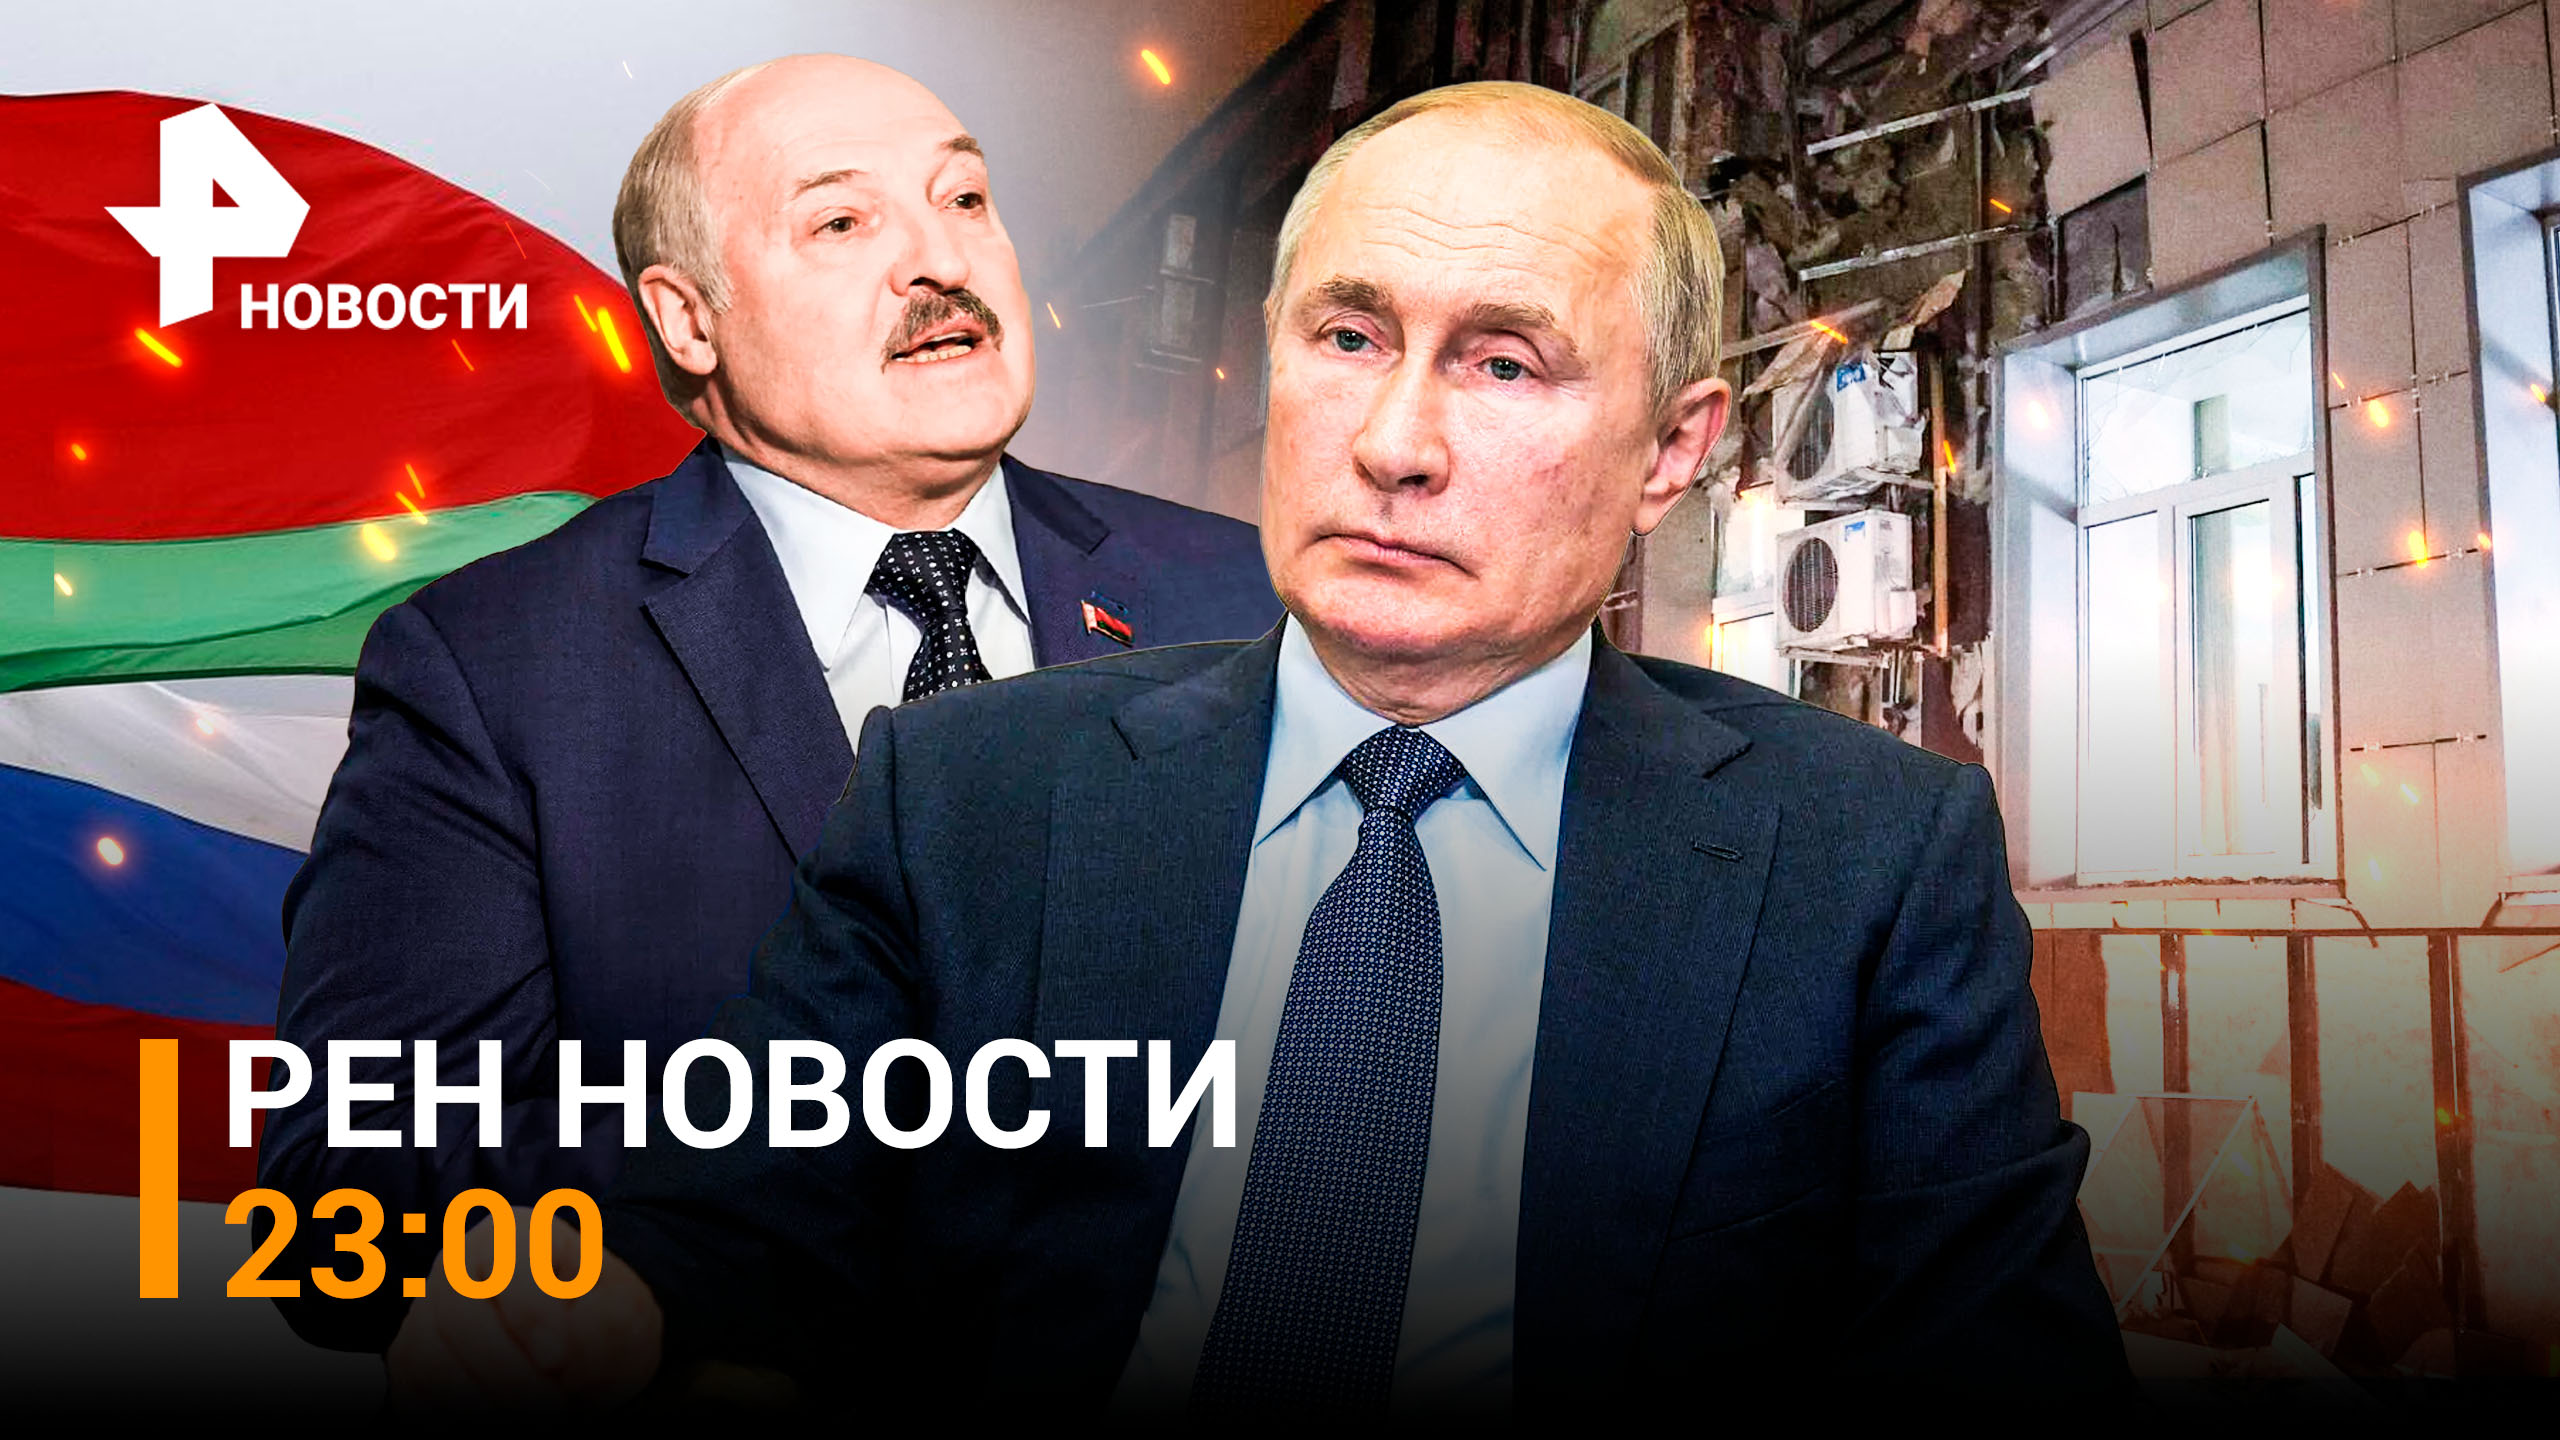 Первый визит Путина в Минск за три года, Киев без света, обстрел больницы / РЕН НОВОСТИ 23:00, 19.12